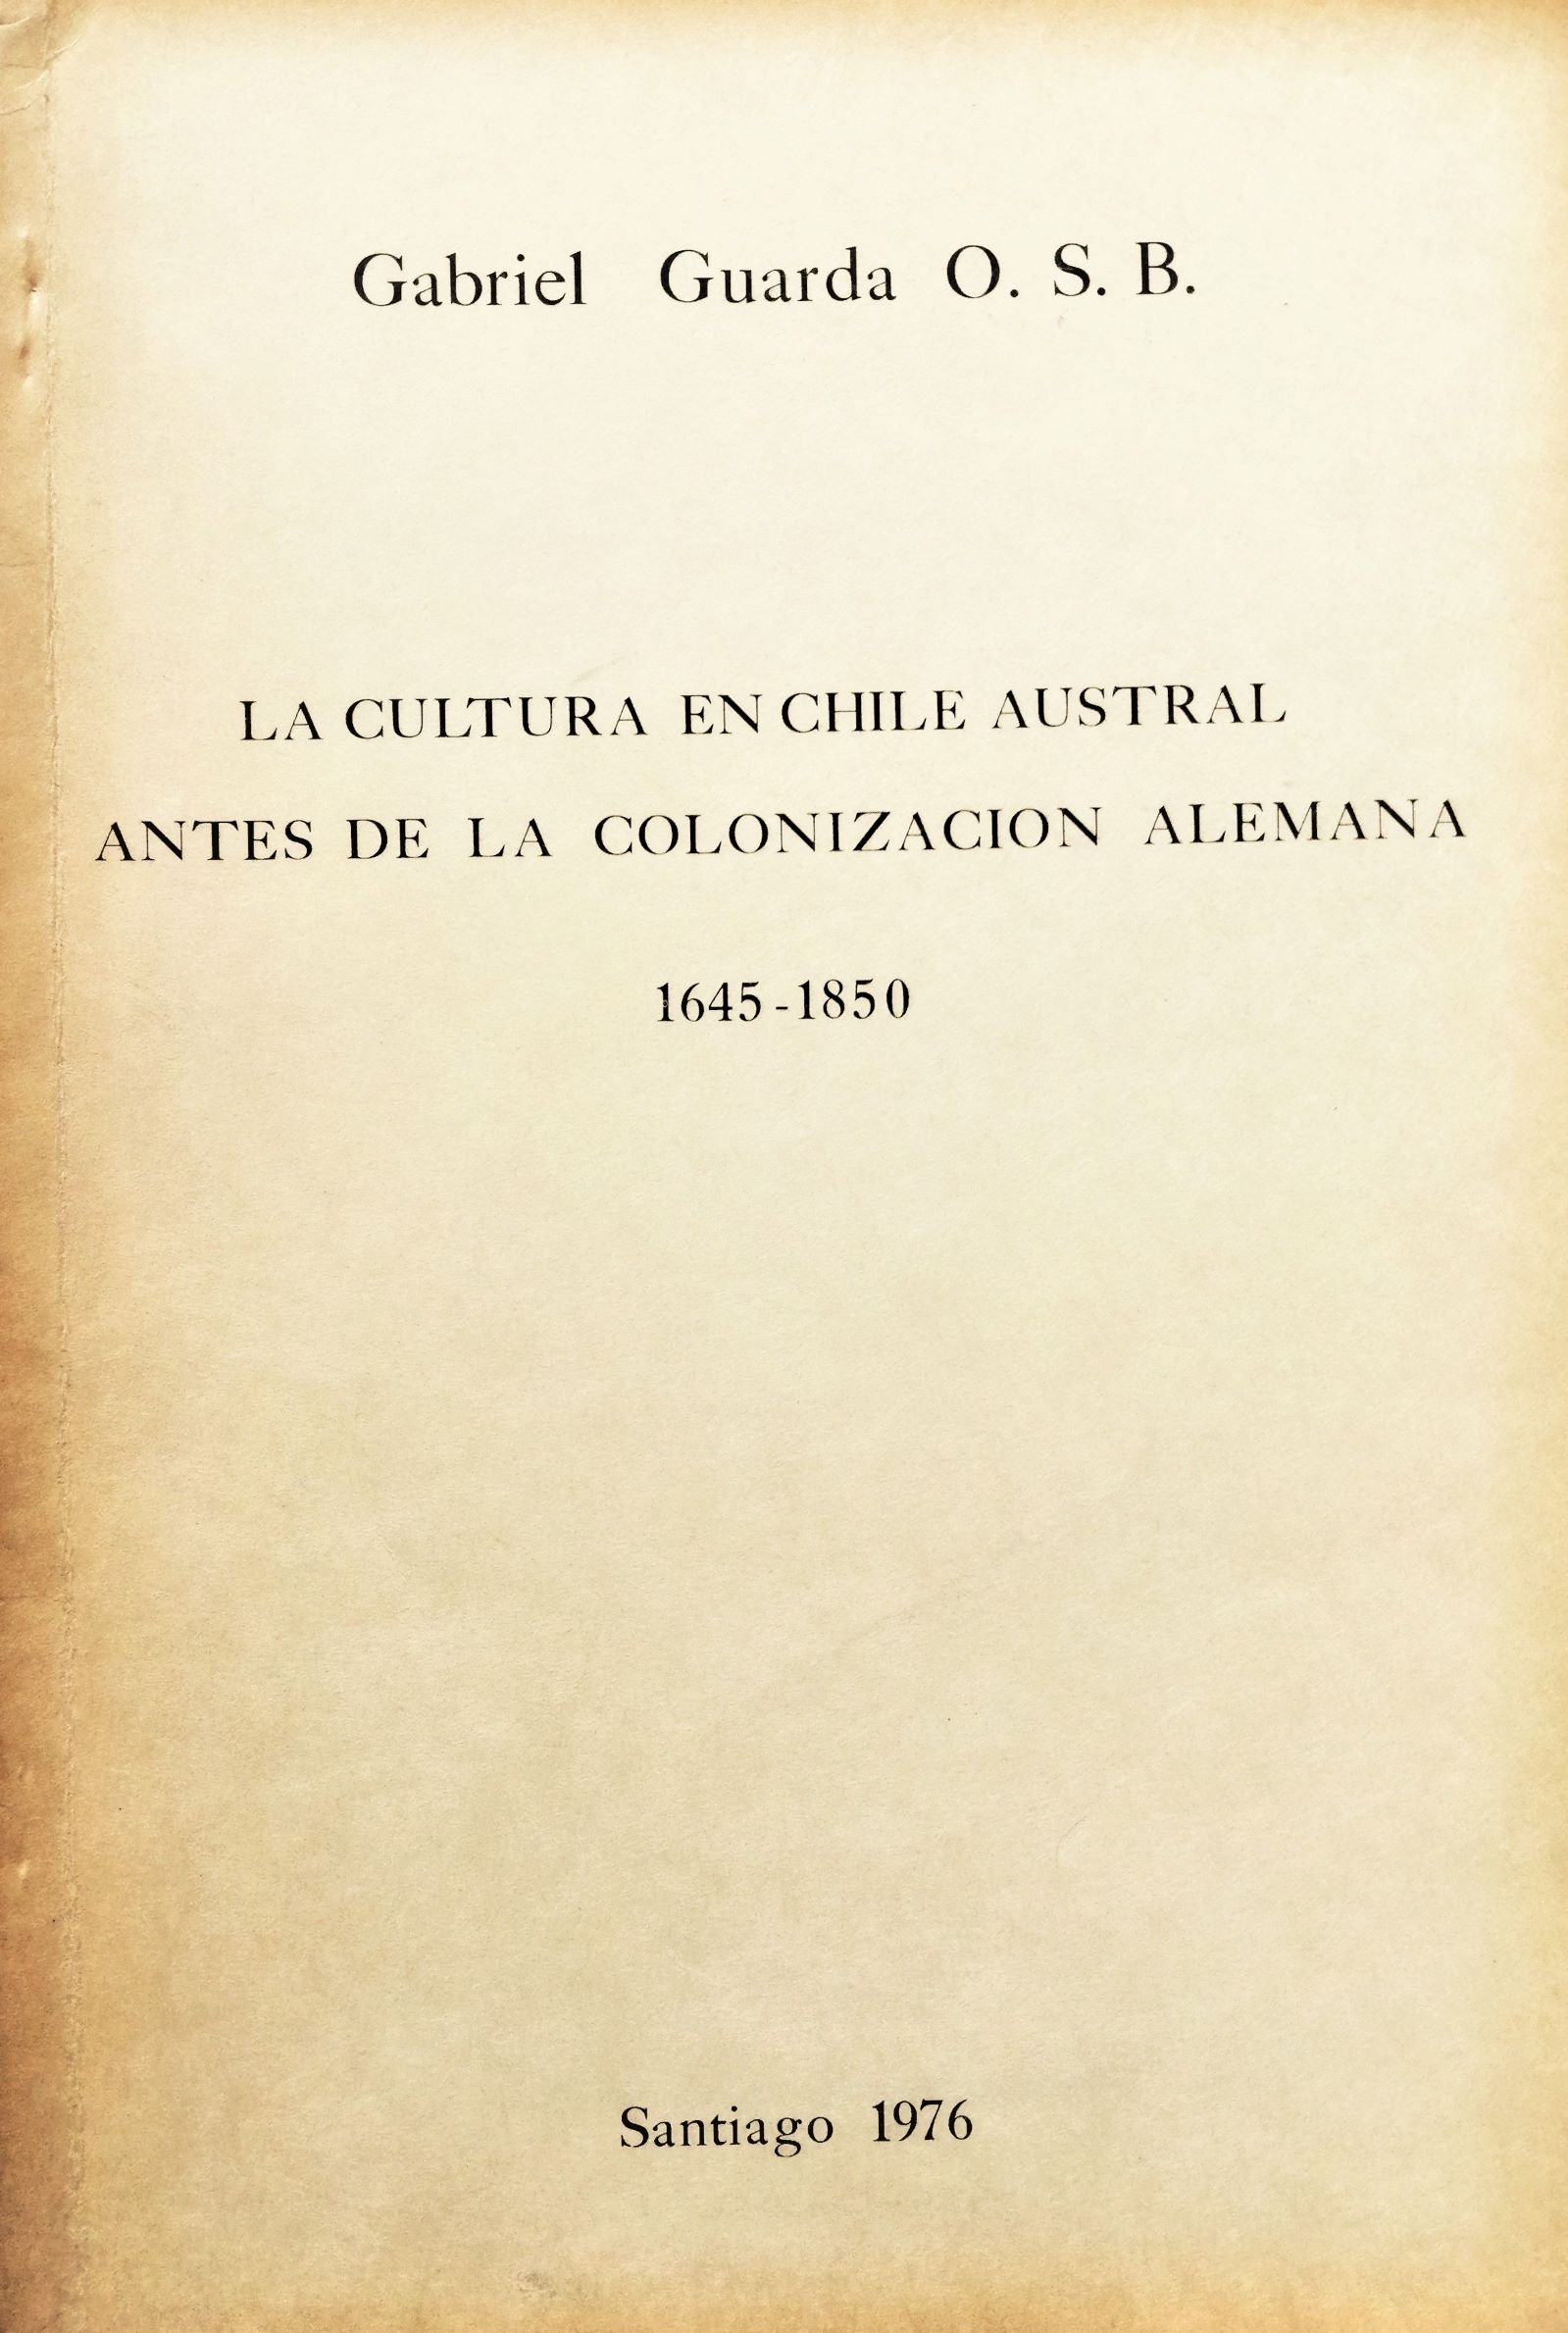 Gabriel Guarda O. S. B - La cultura en chile austral antes de la colonización alemana 1645-1850